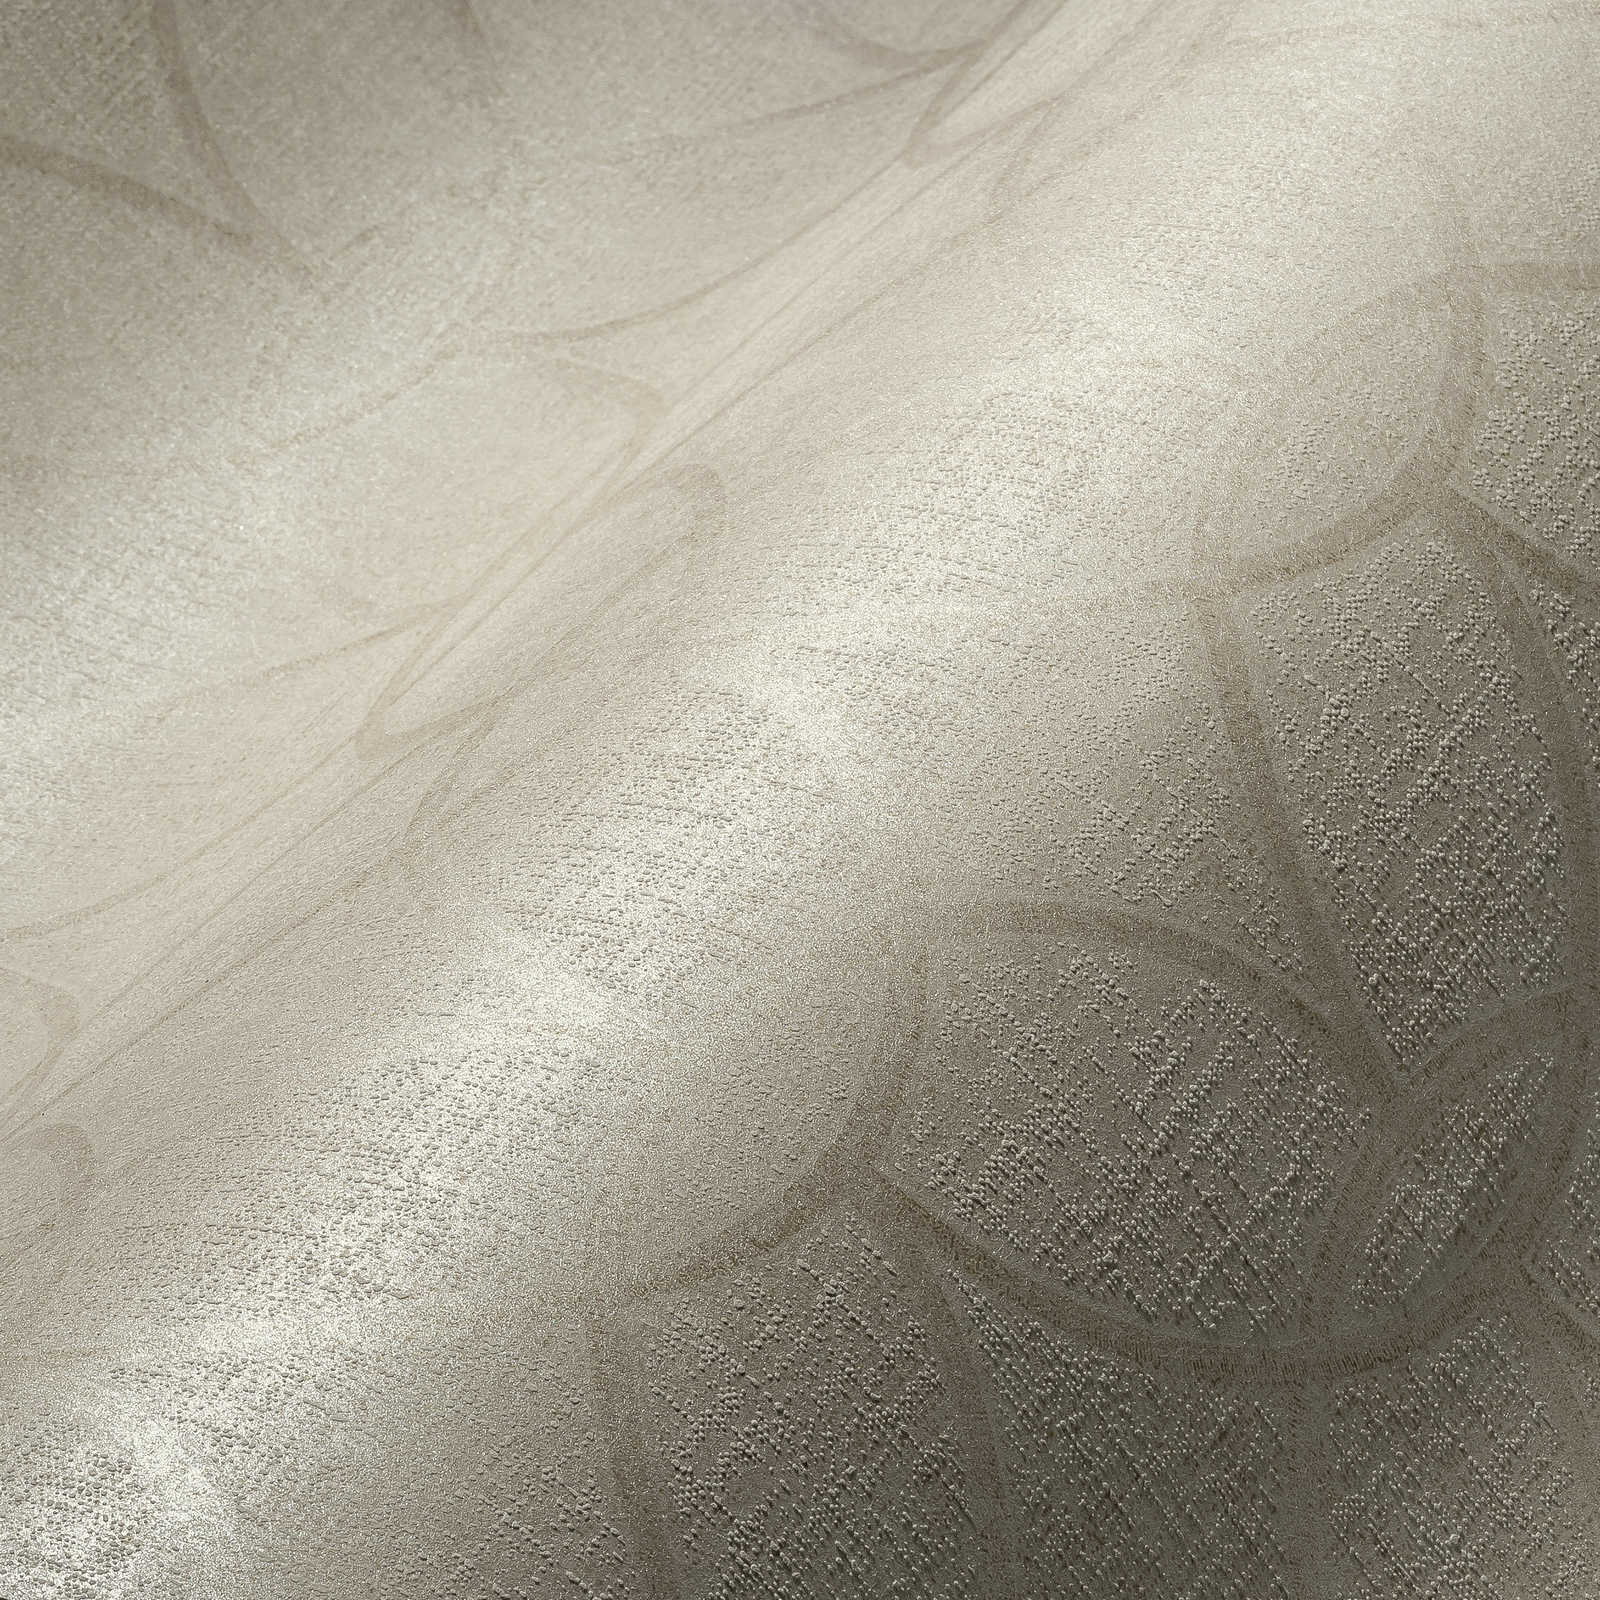             Romig wit behang met helder glanzend patroon & geometrisch design - wit
        